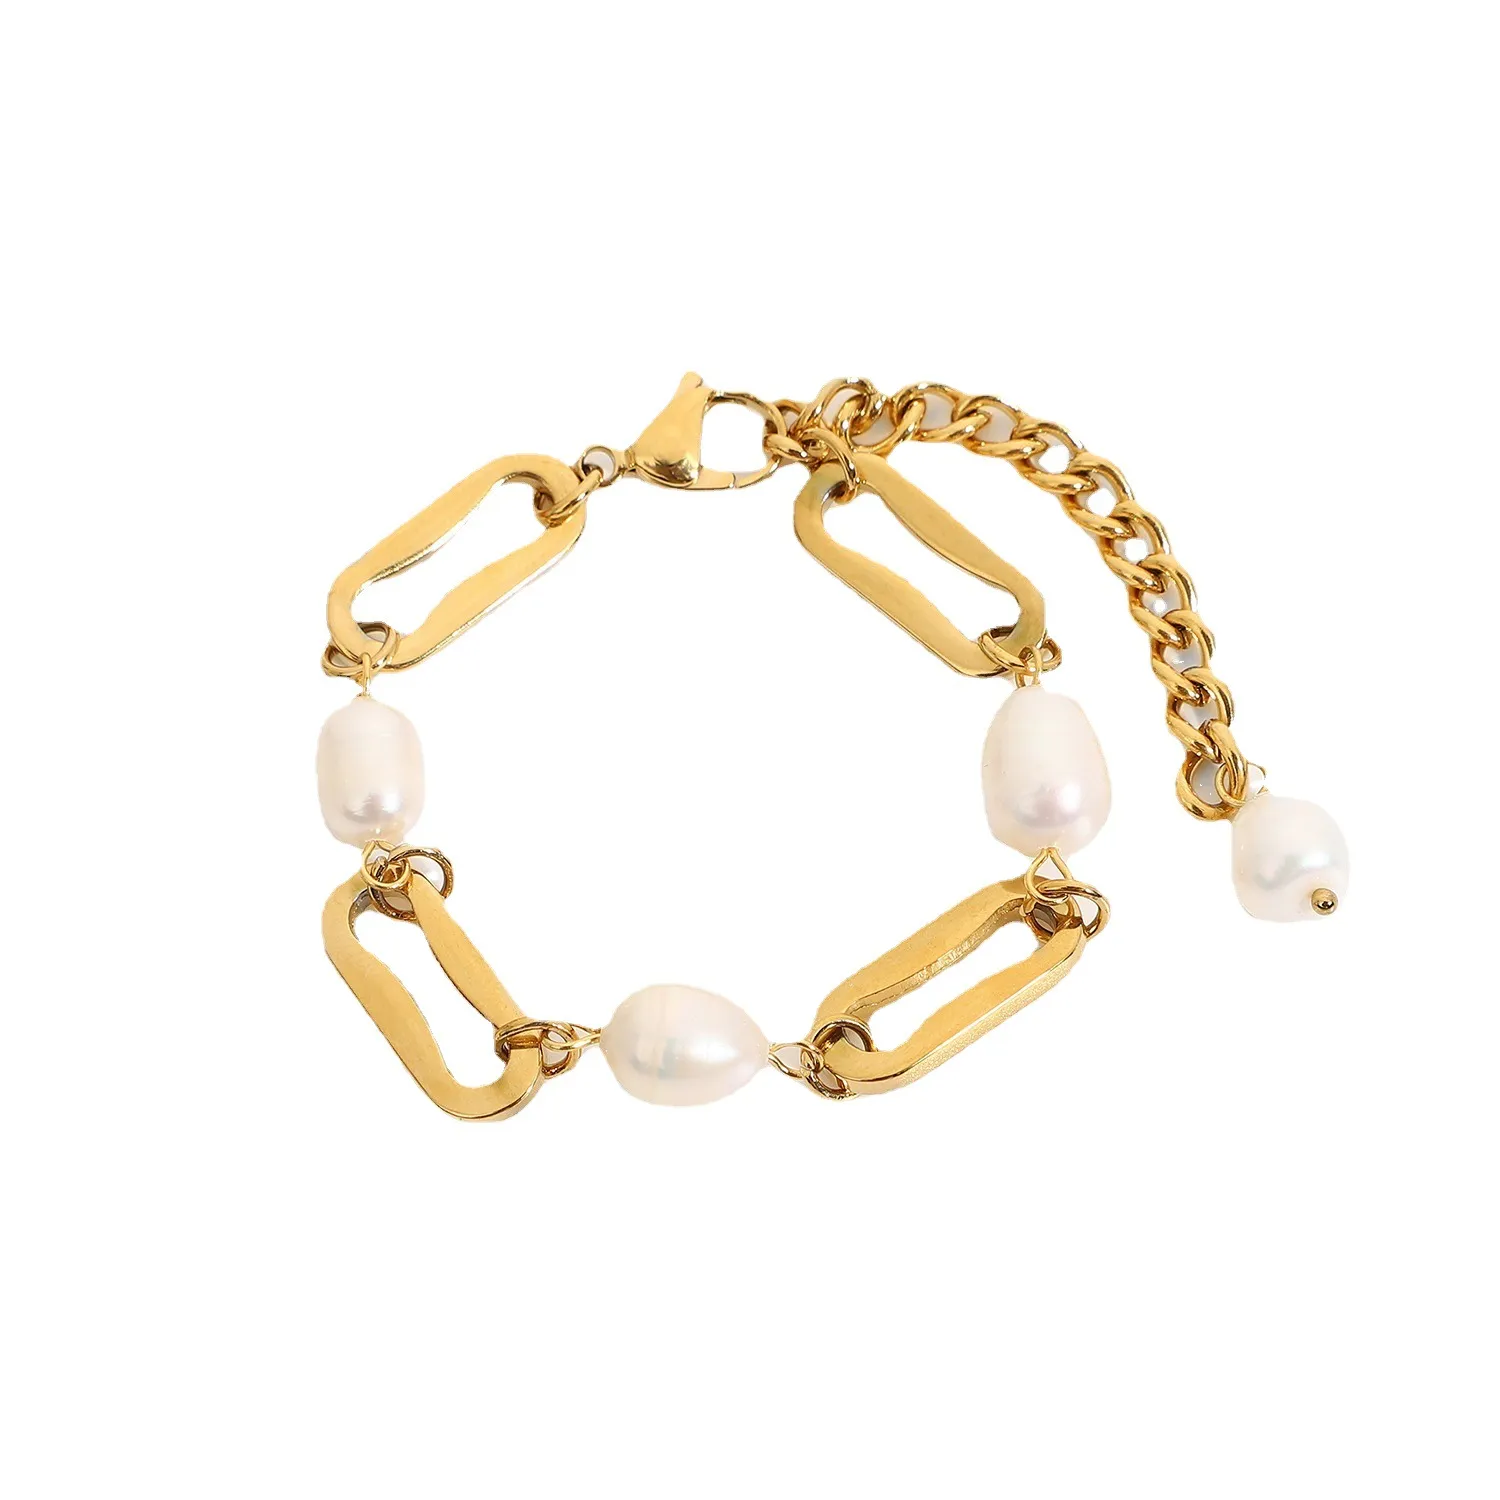 Diseño barroco de moda dorado y acero inoxidable pulsera de perla delicada accesorio de estilo único